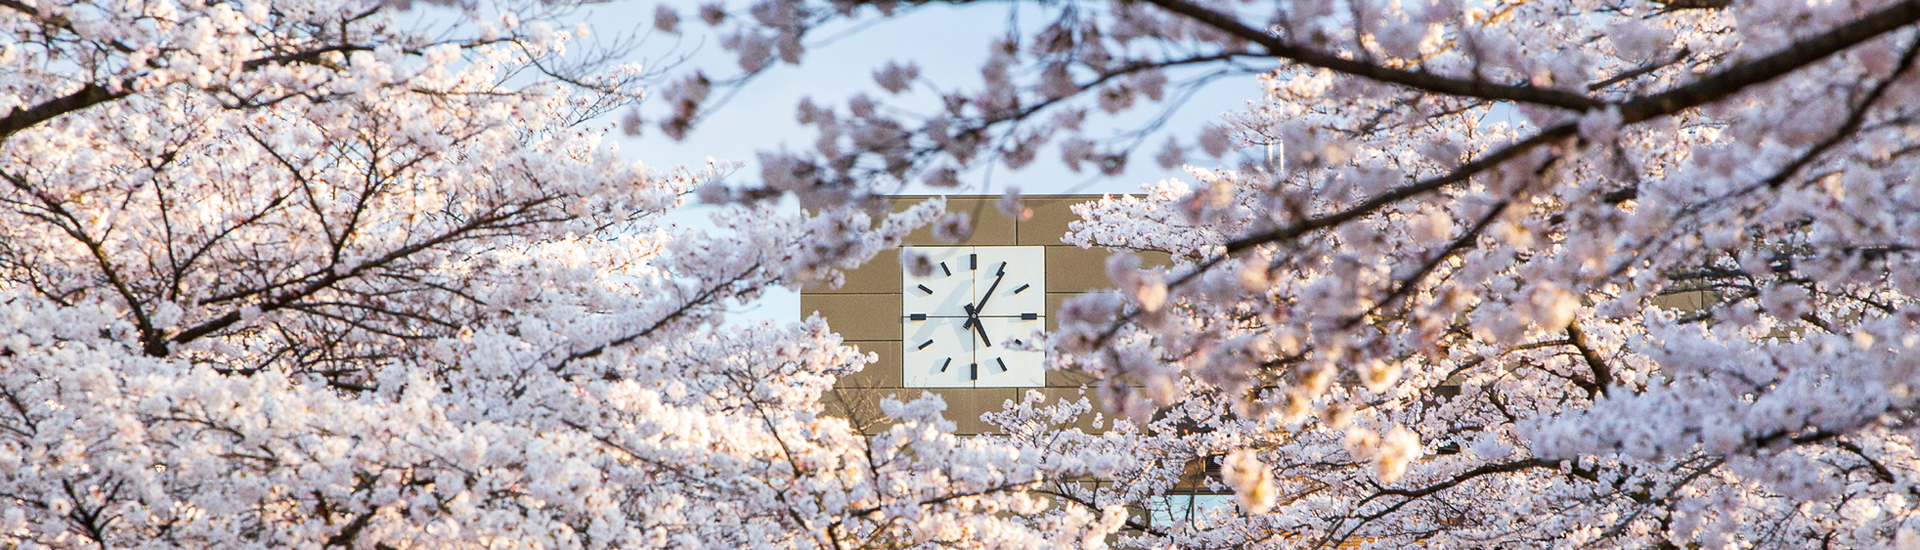 Galhos de cerejeira rosa claro. Atrás deles é possível ver um relógio externo de um prédio e o céu azul claro ao fundo.